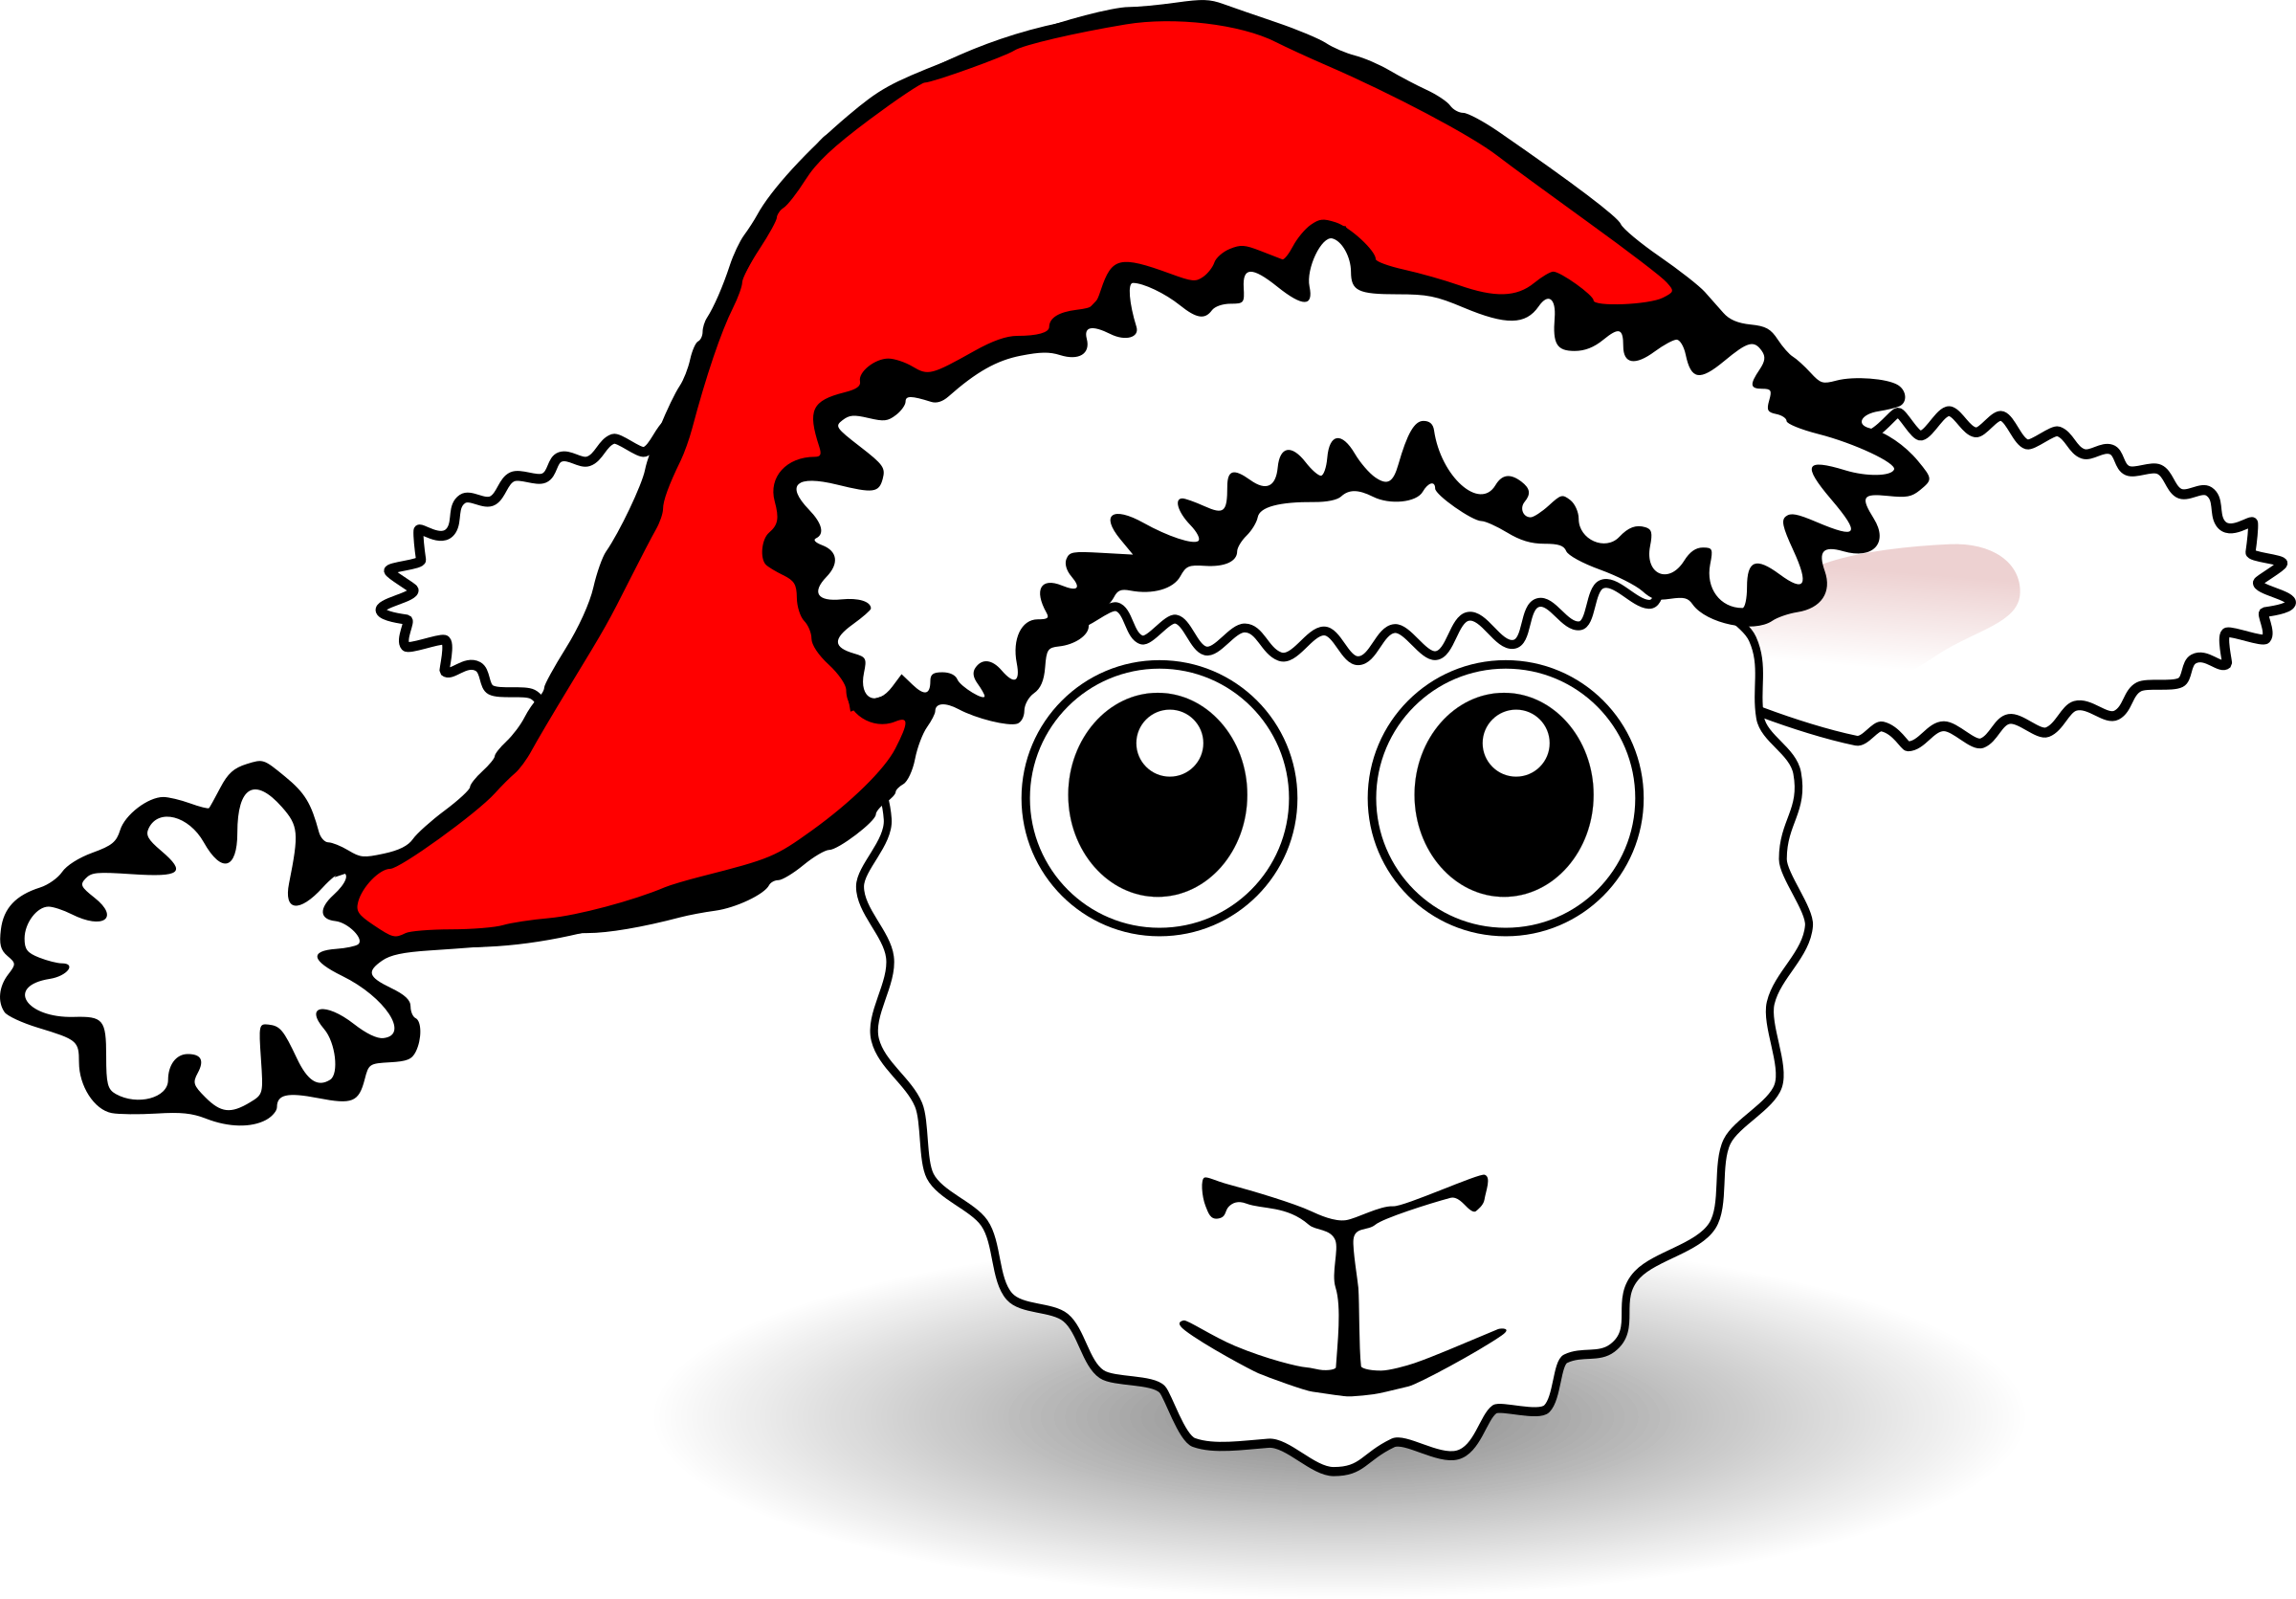 Dov’è la pecorella nascosta in mezzo ai Babbo Natale?